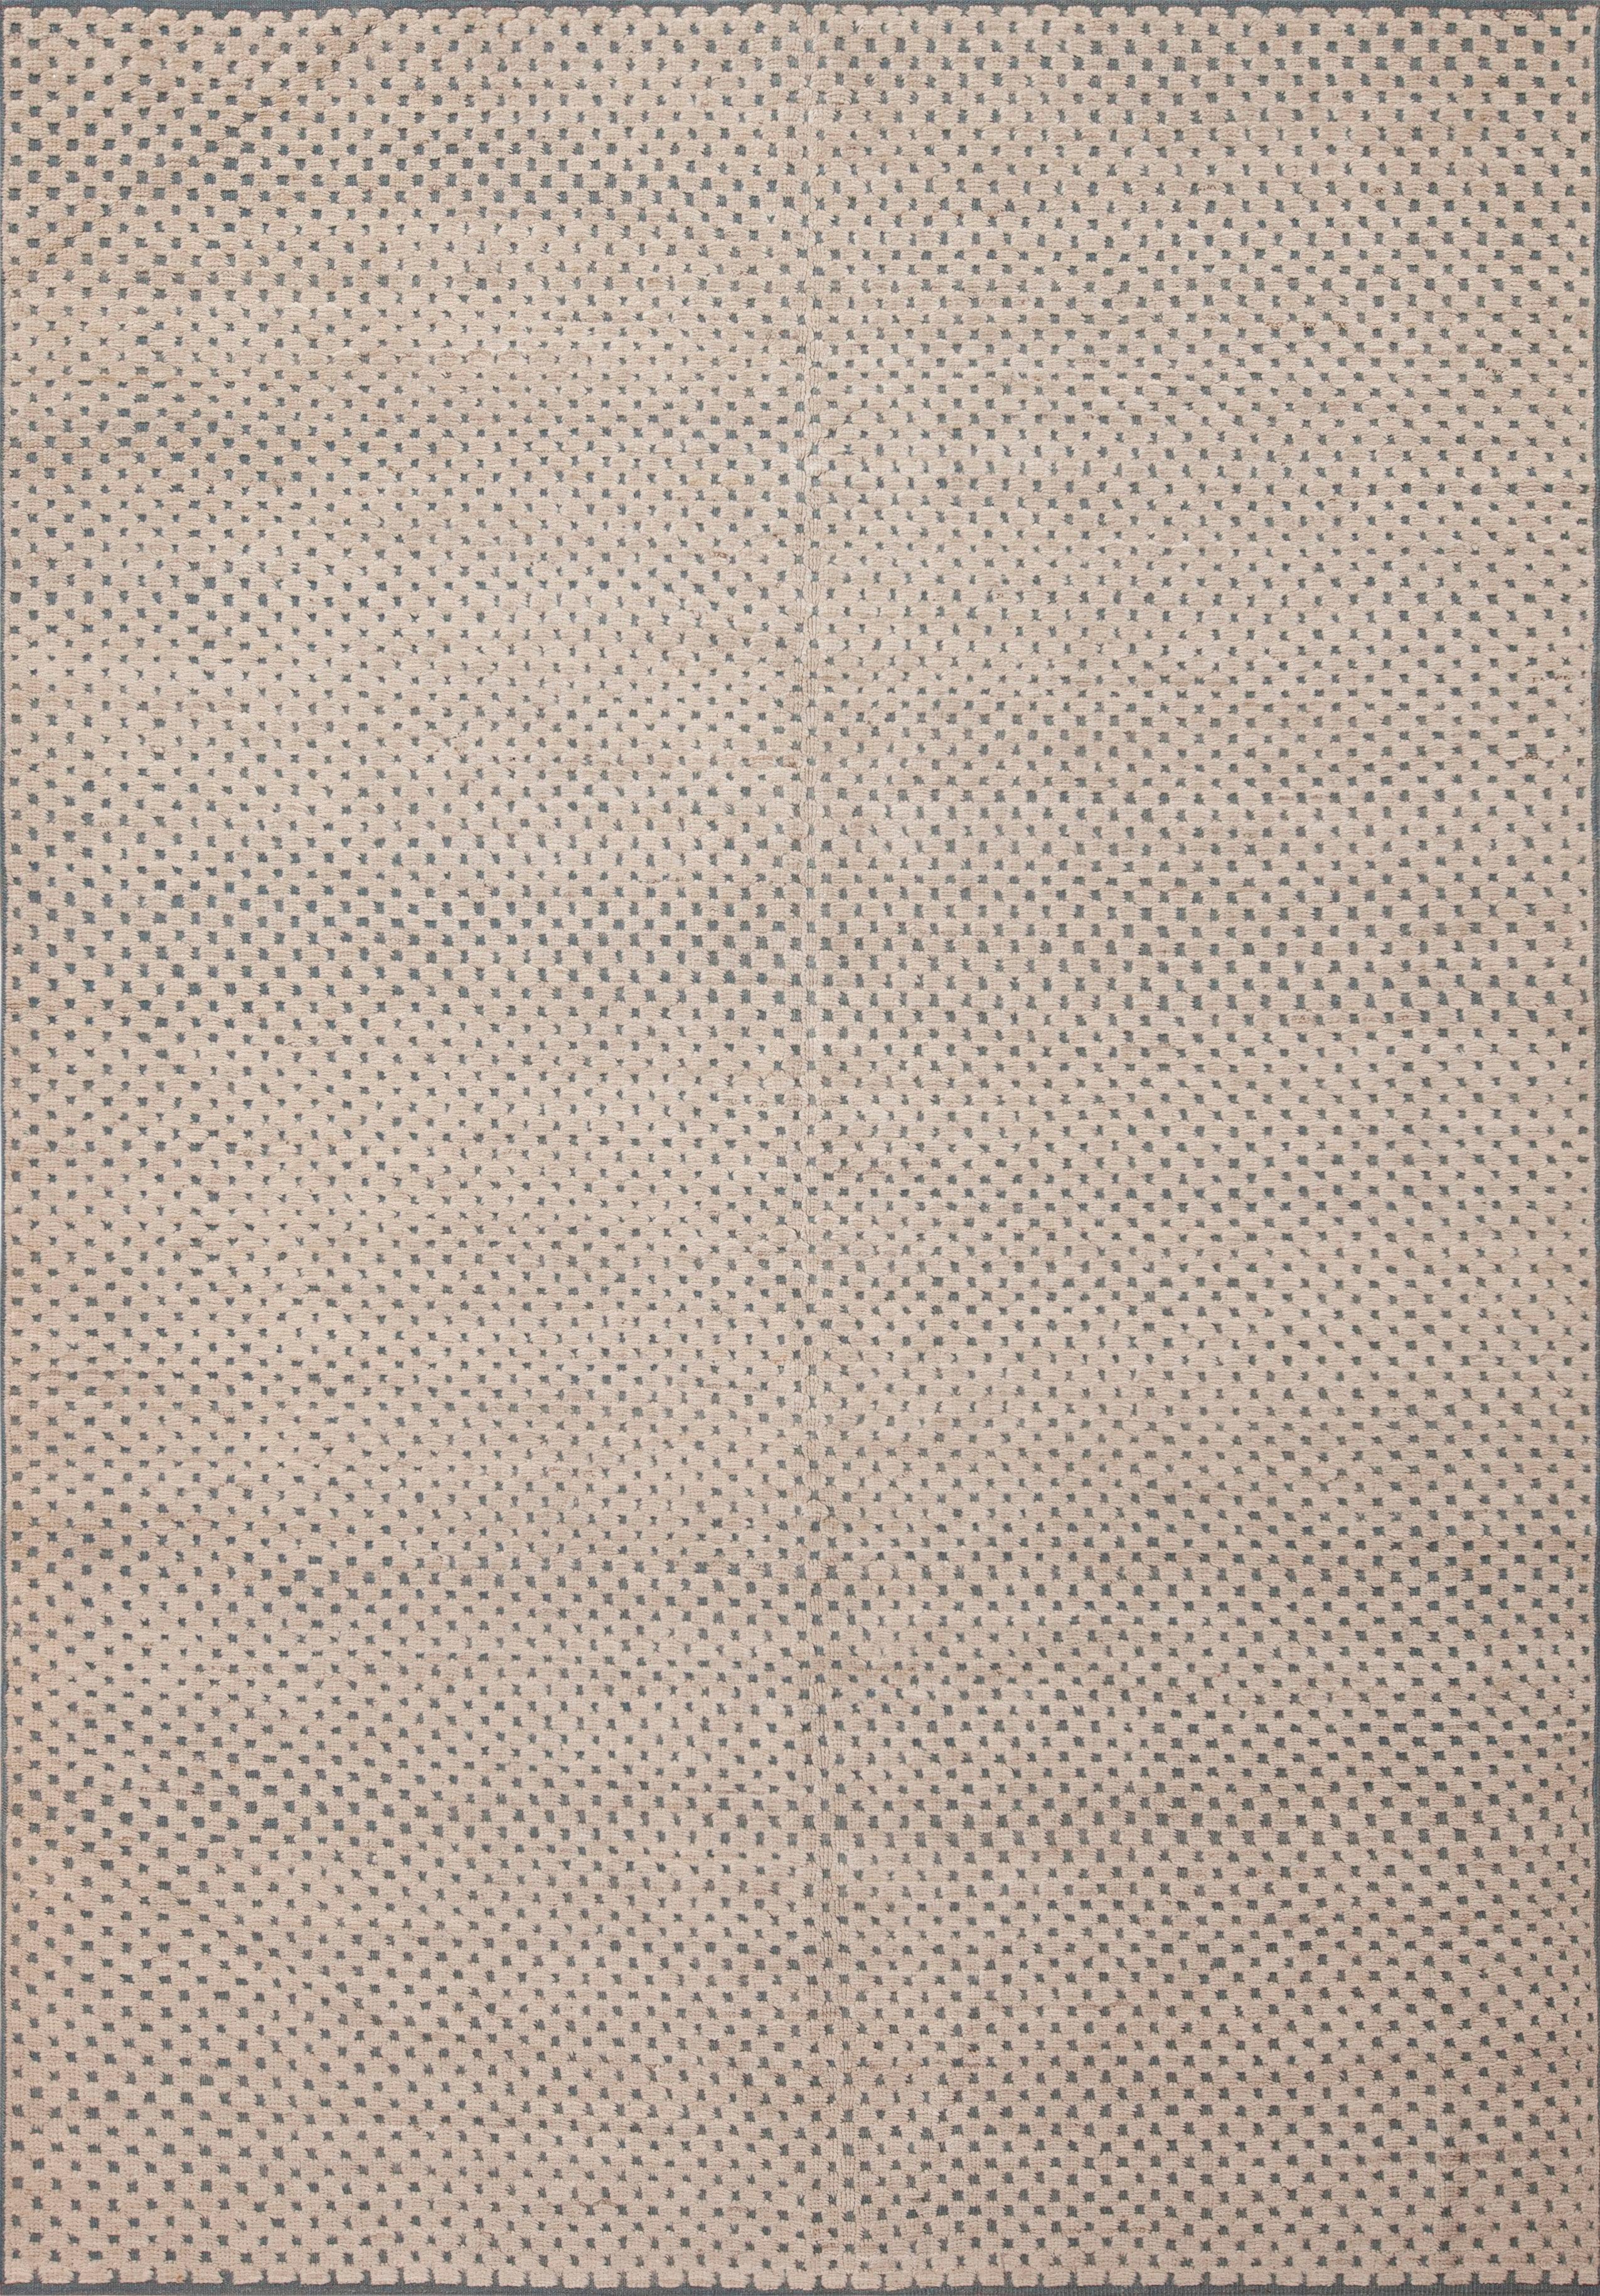 Centrasiatique Collection Nazmiyal, ivoire, gris clair et bleu, tapis moderne de 6'4